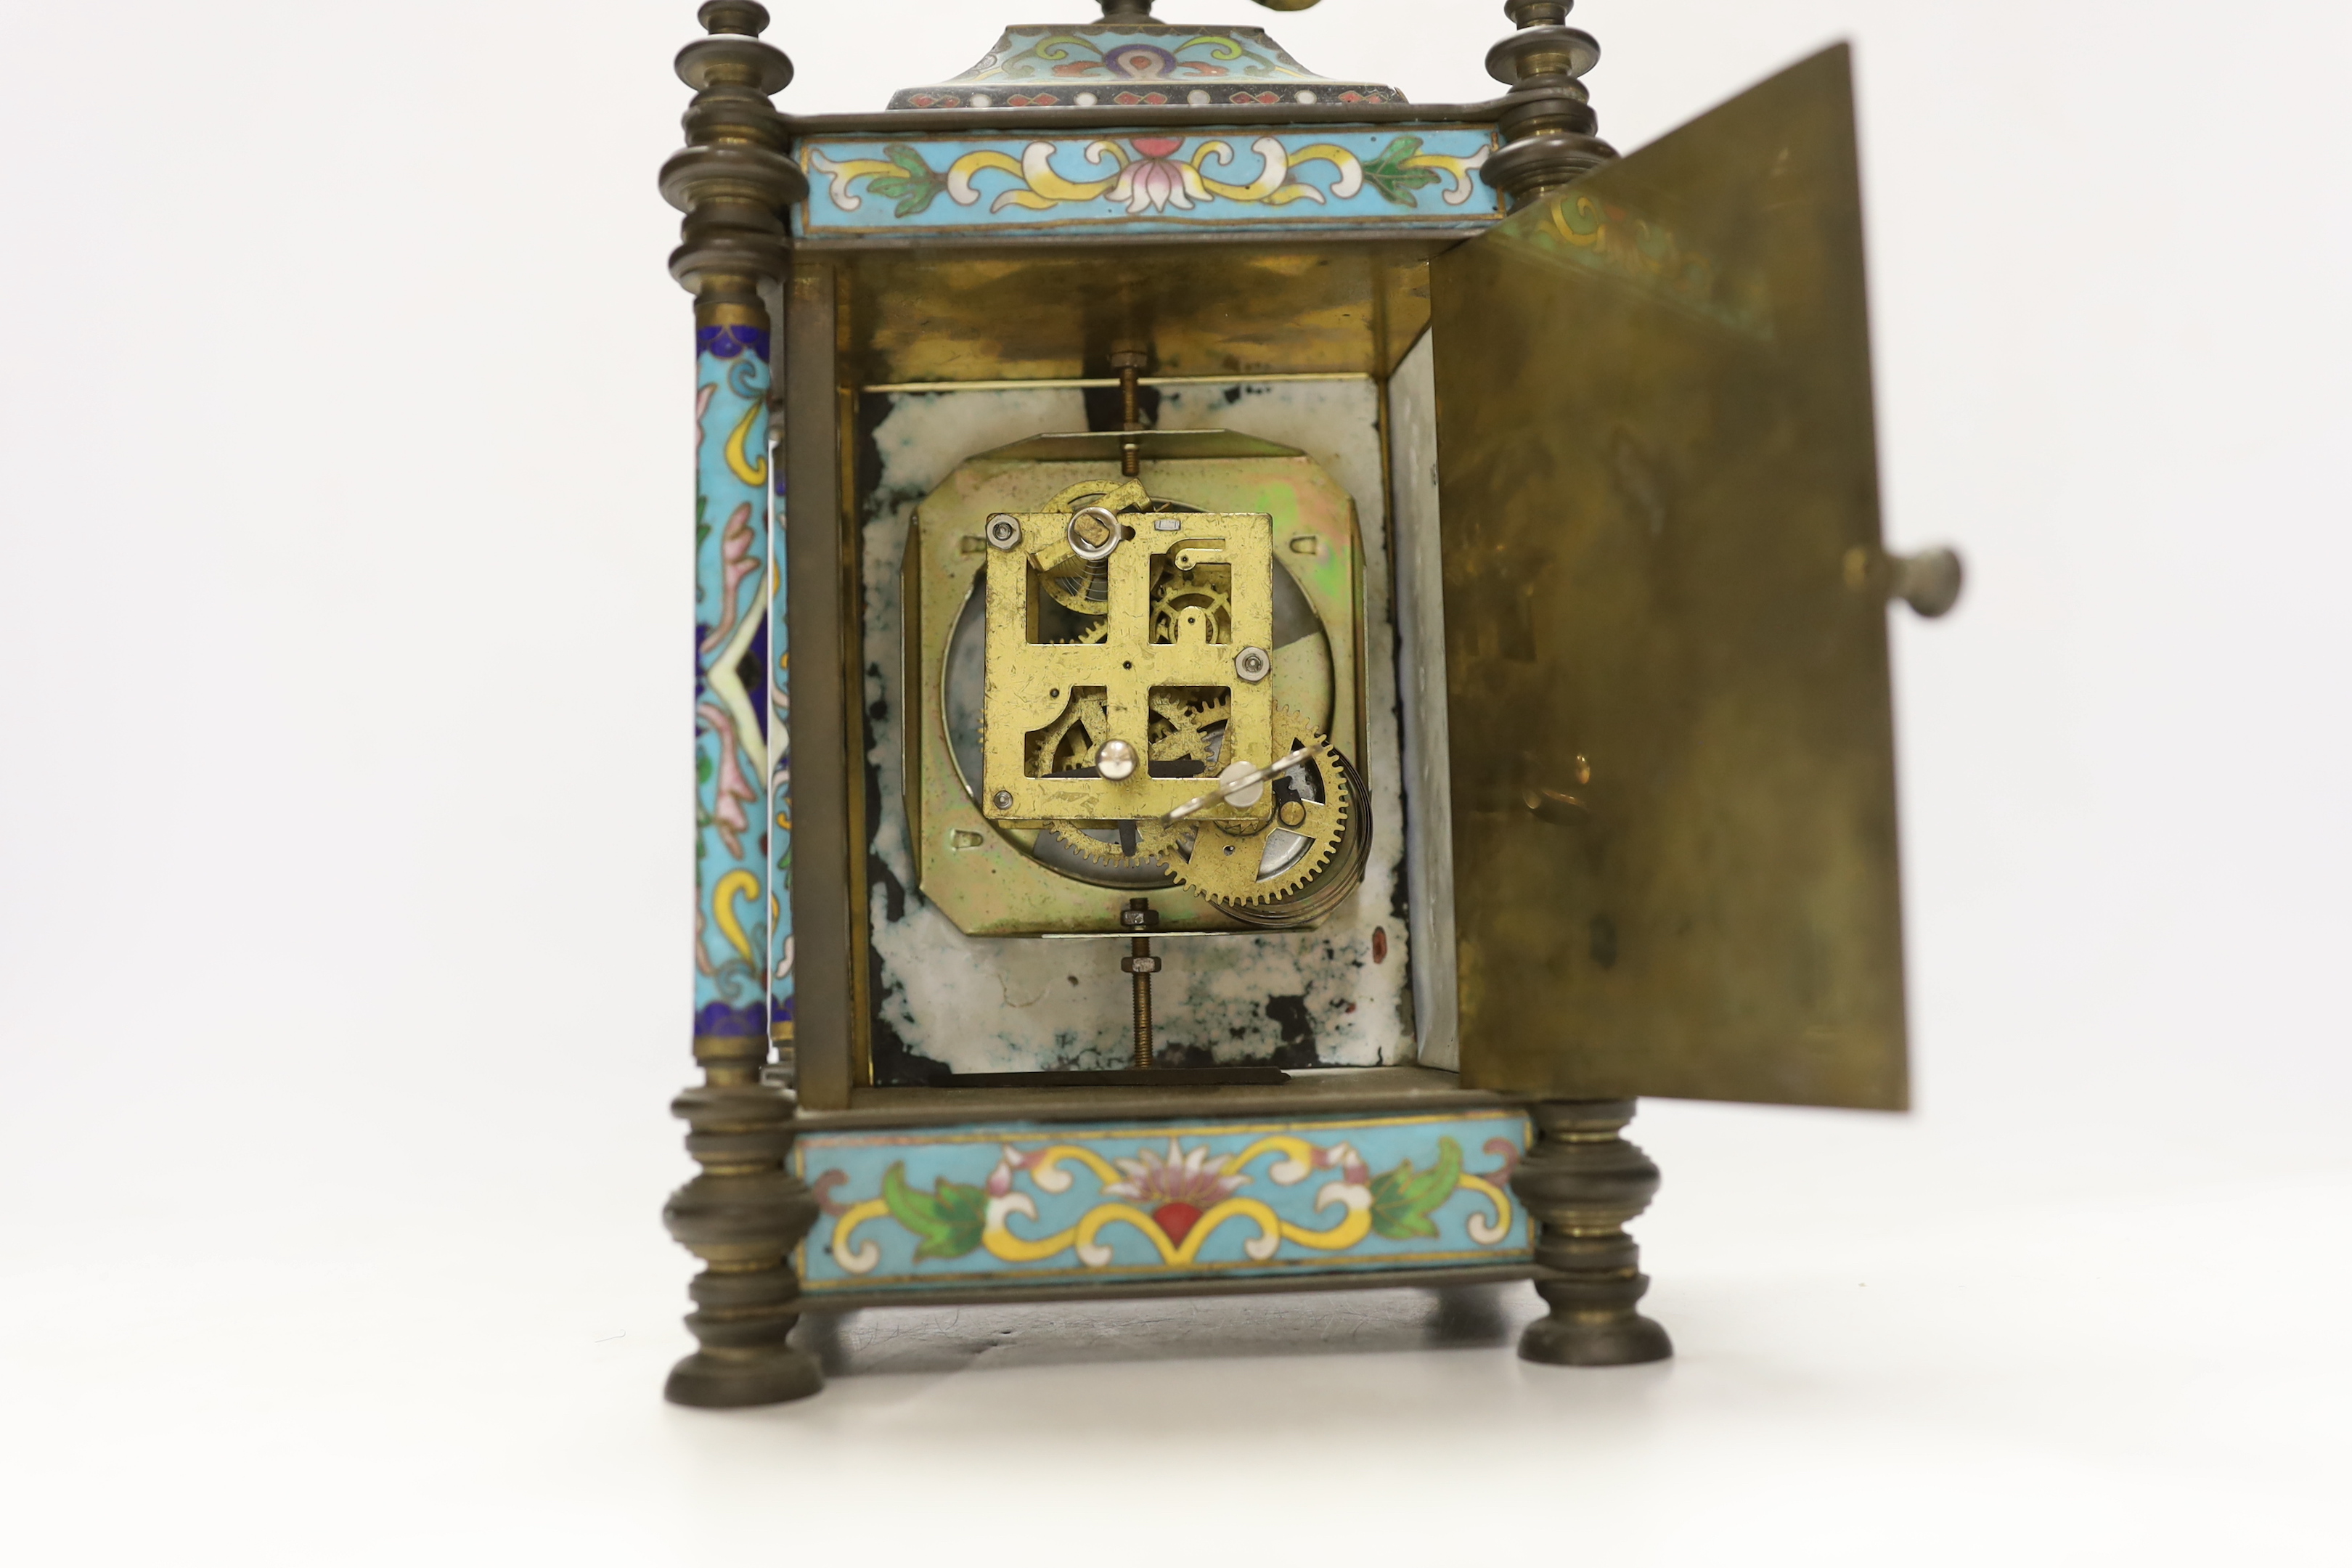 A 20th century Cloisonné enamel clock, 26cm high